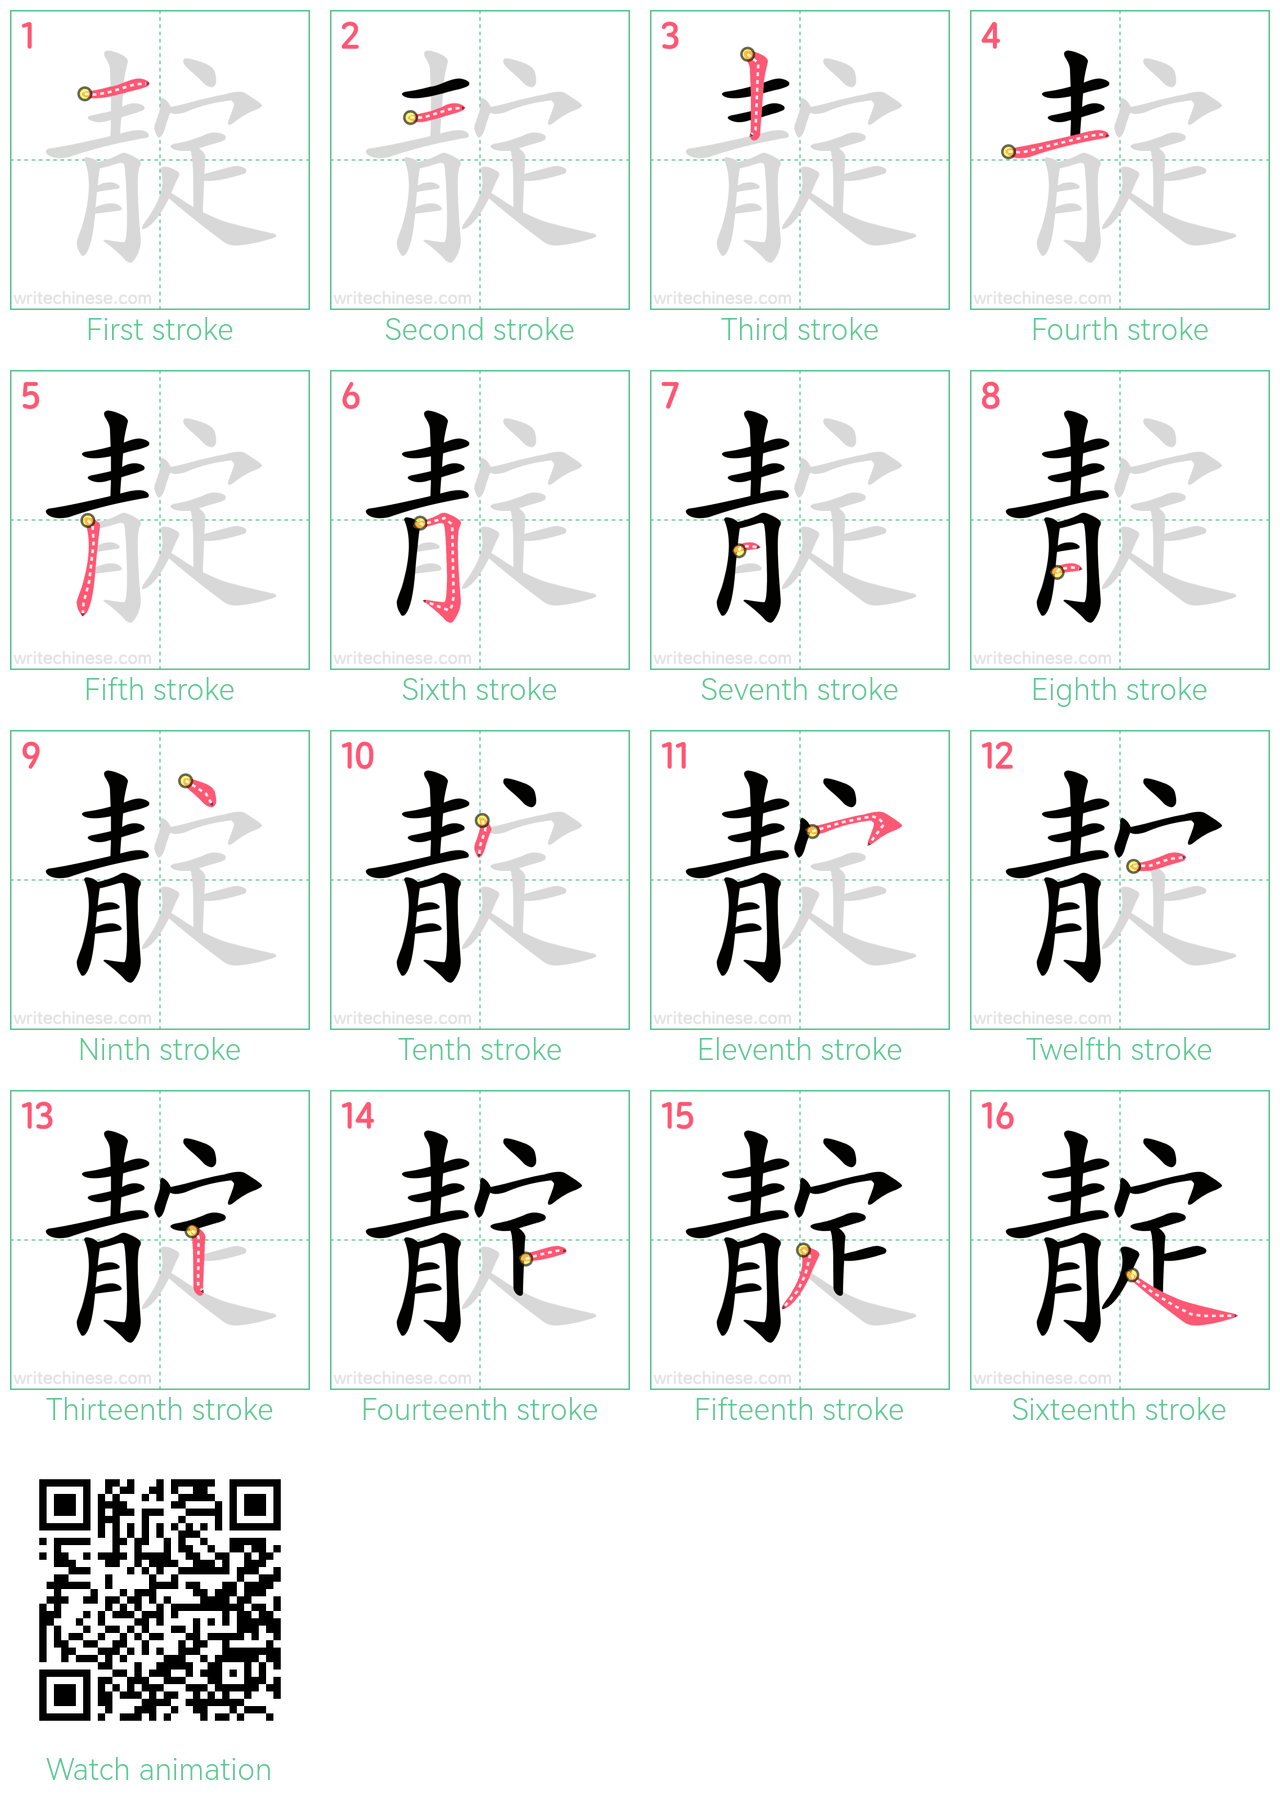 靛 step-by-step stroke order diagrams